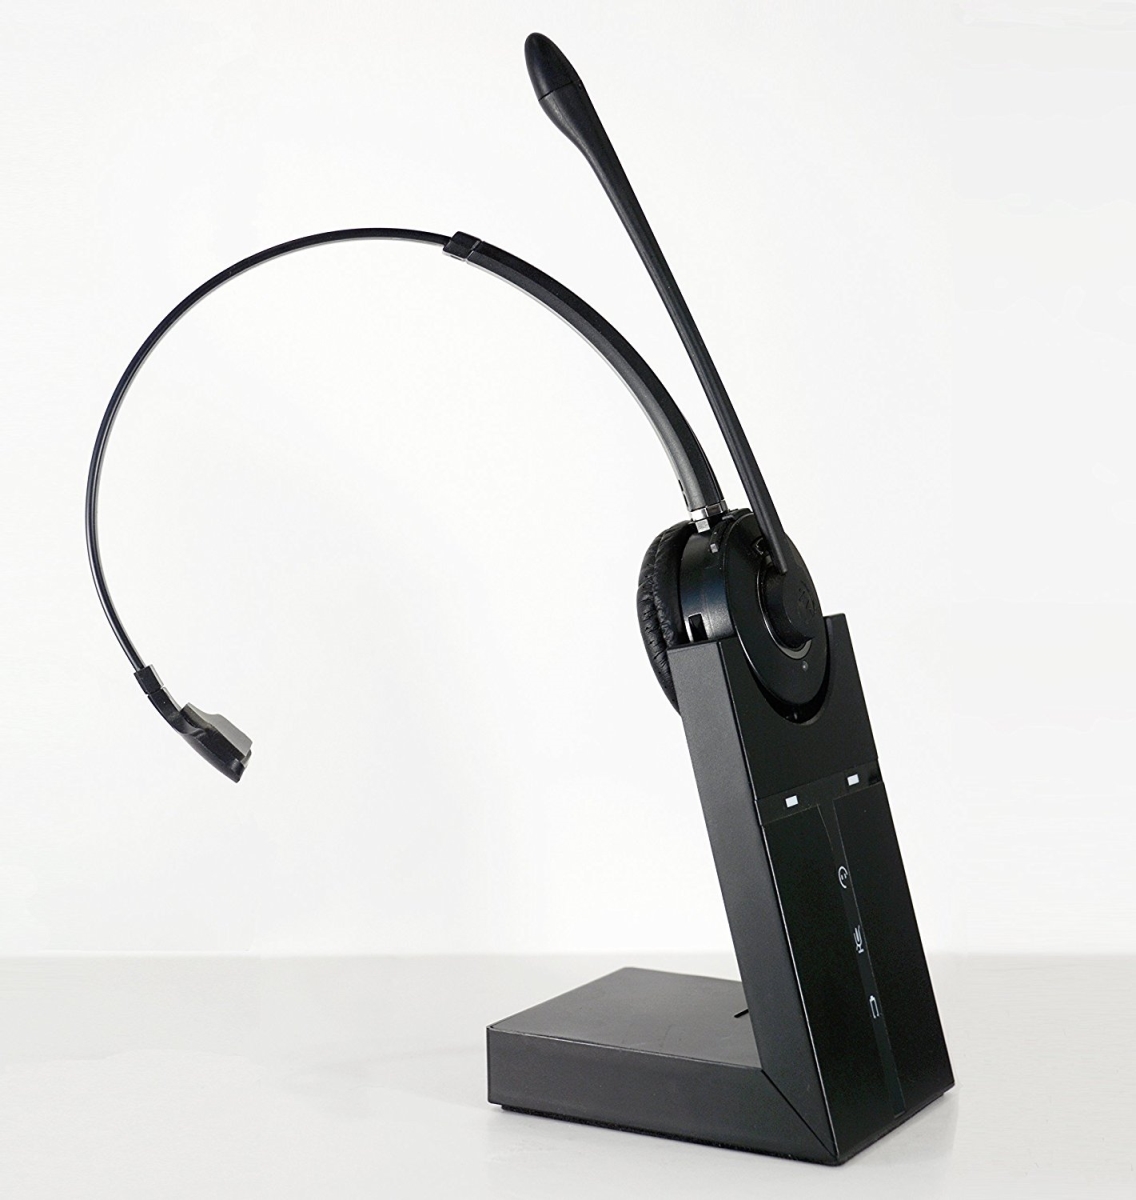 Picture of Spracht HS3010 Zum Maetro USB Dect Headset - Black